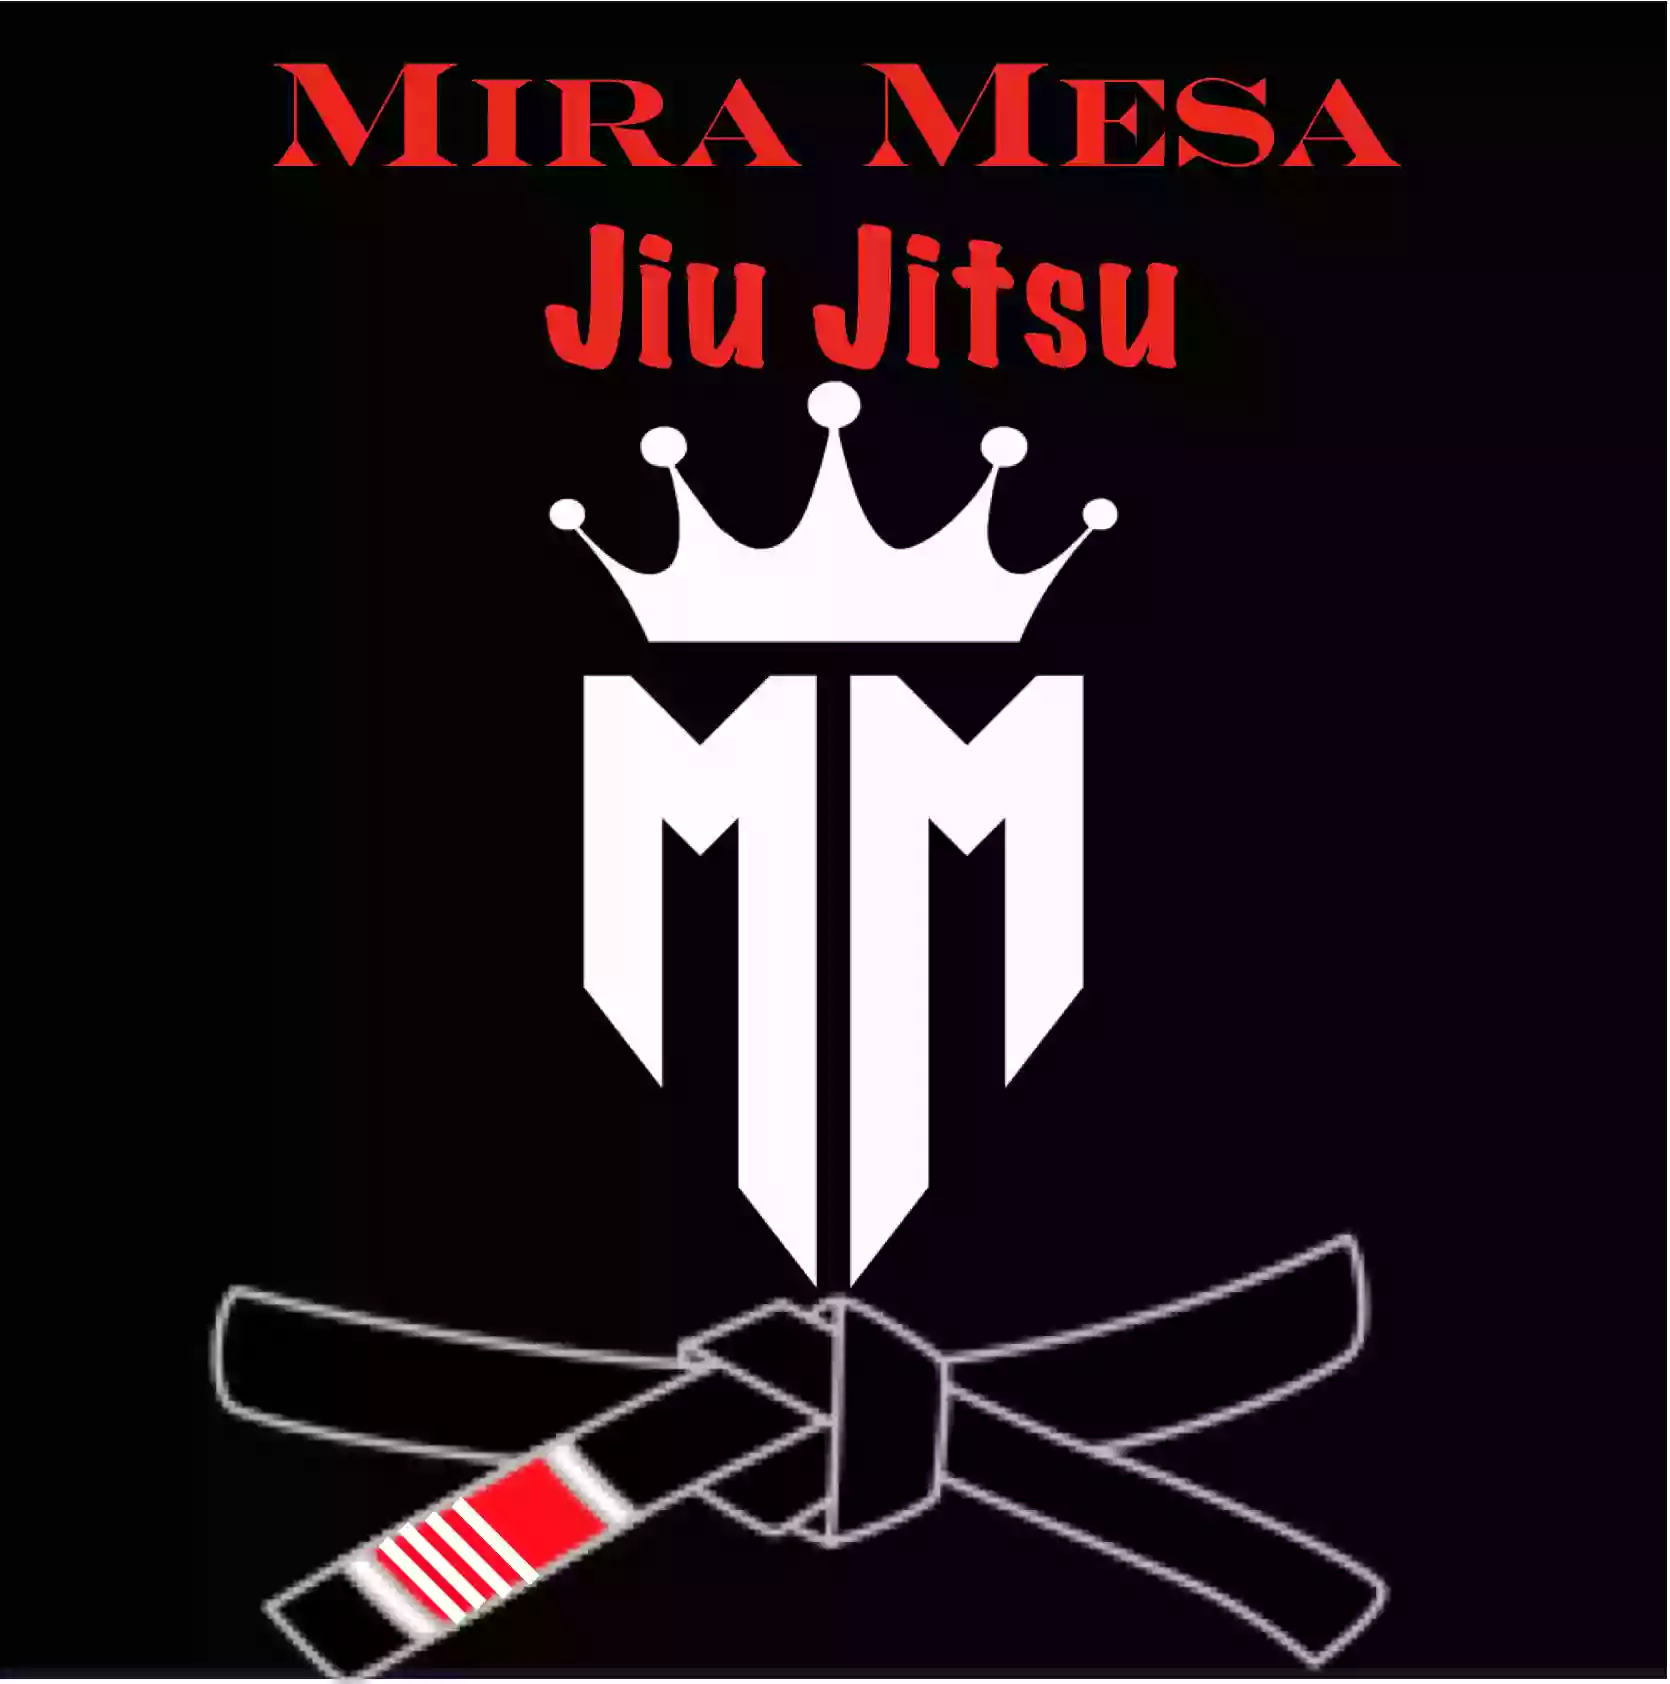 Mira Mesa Jiu Jitsu